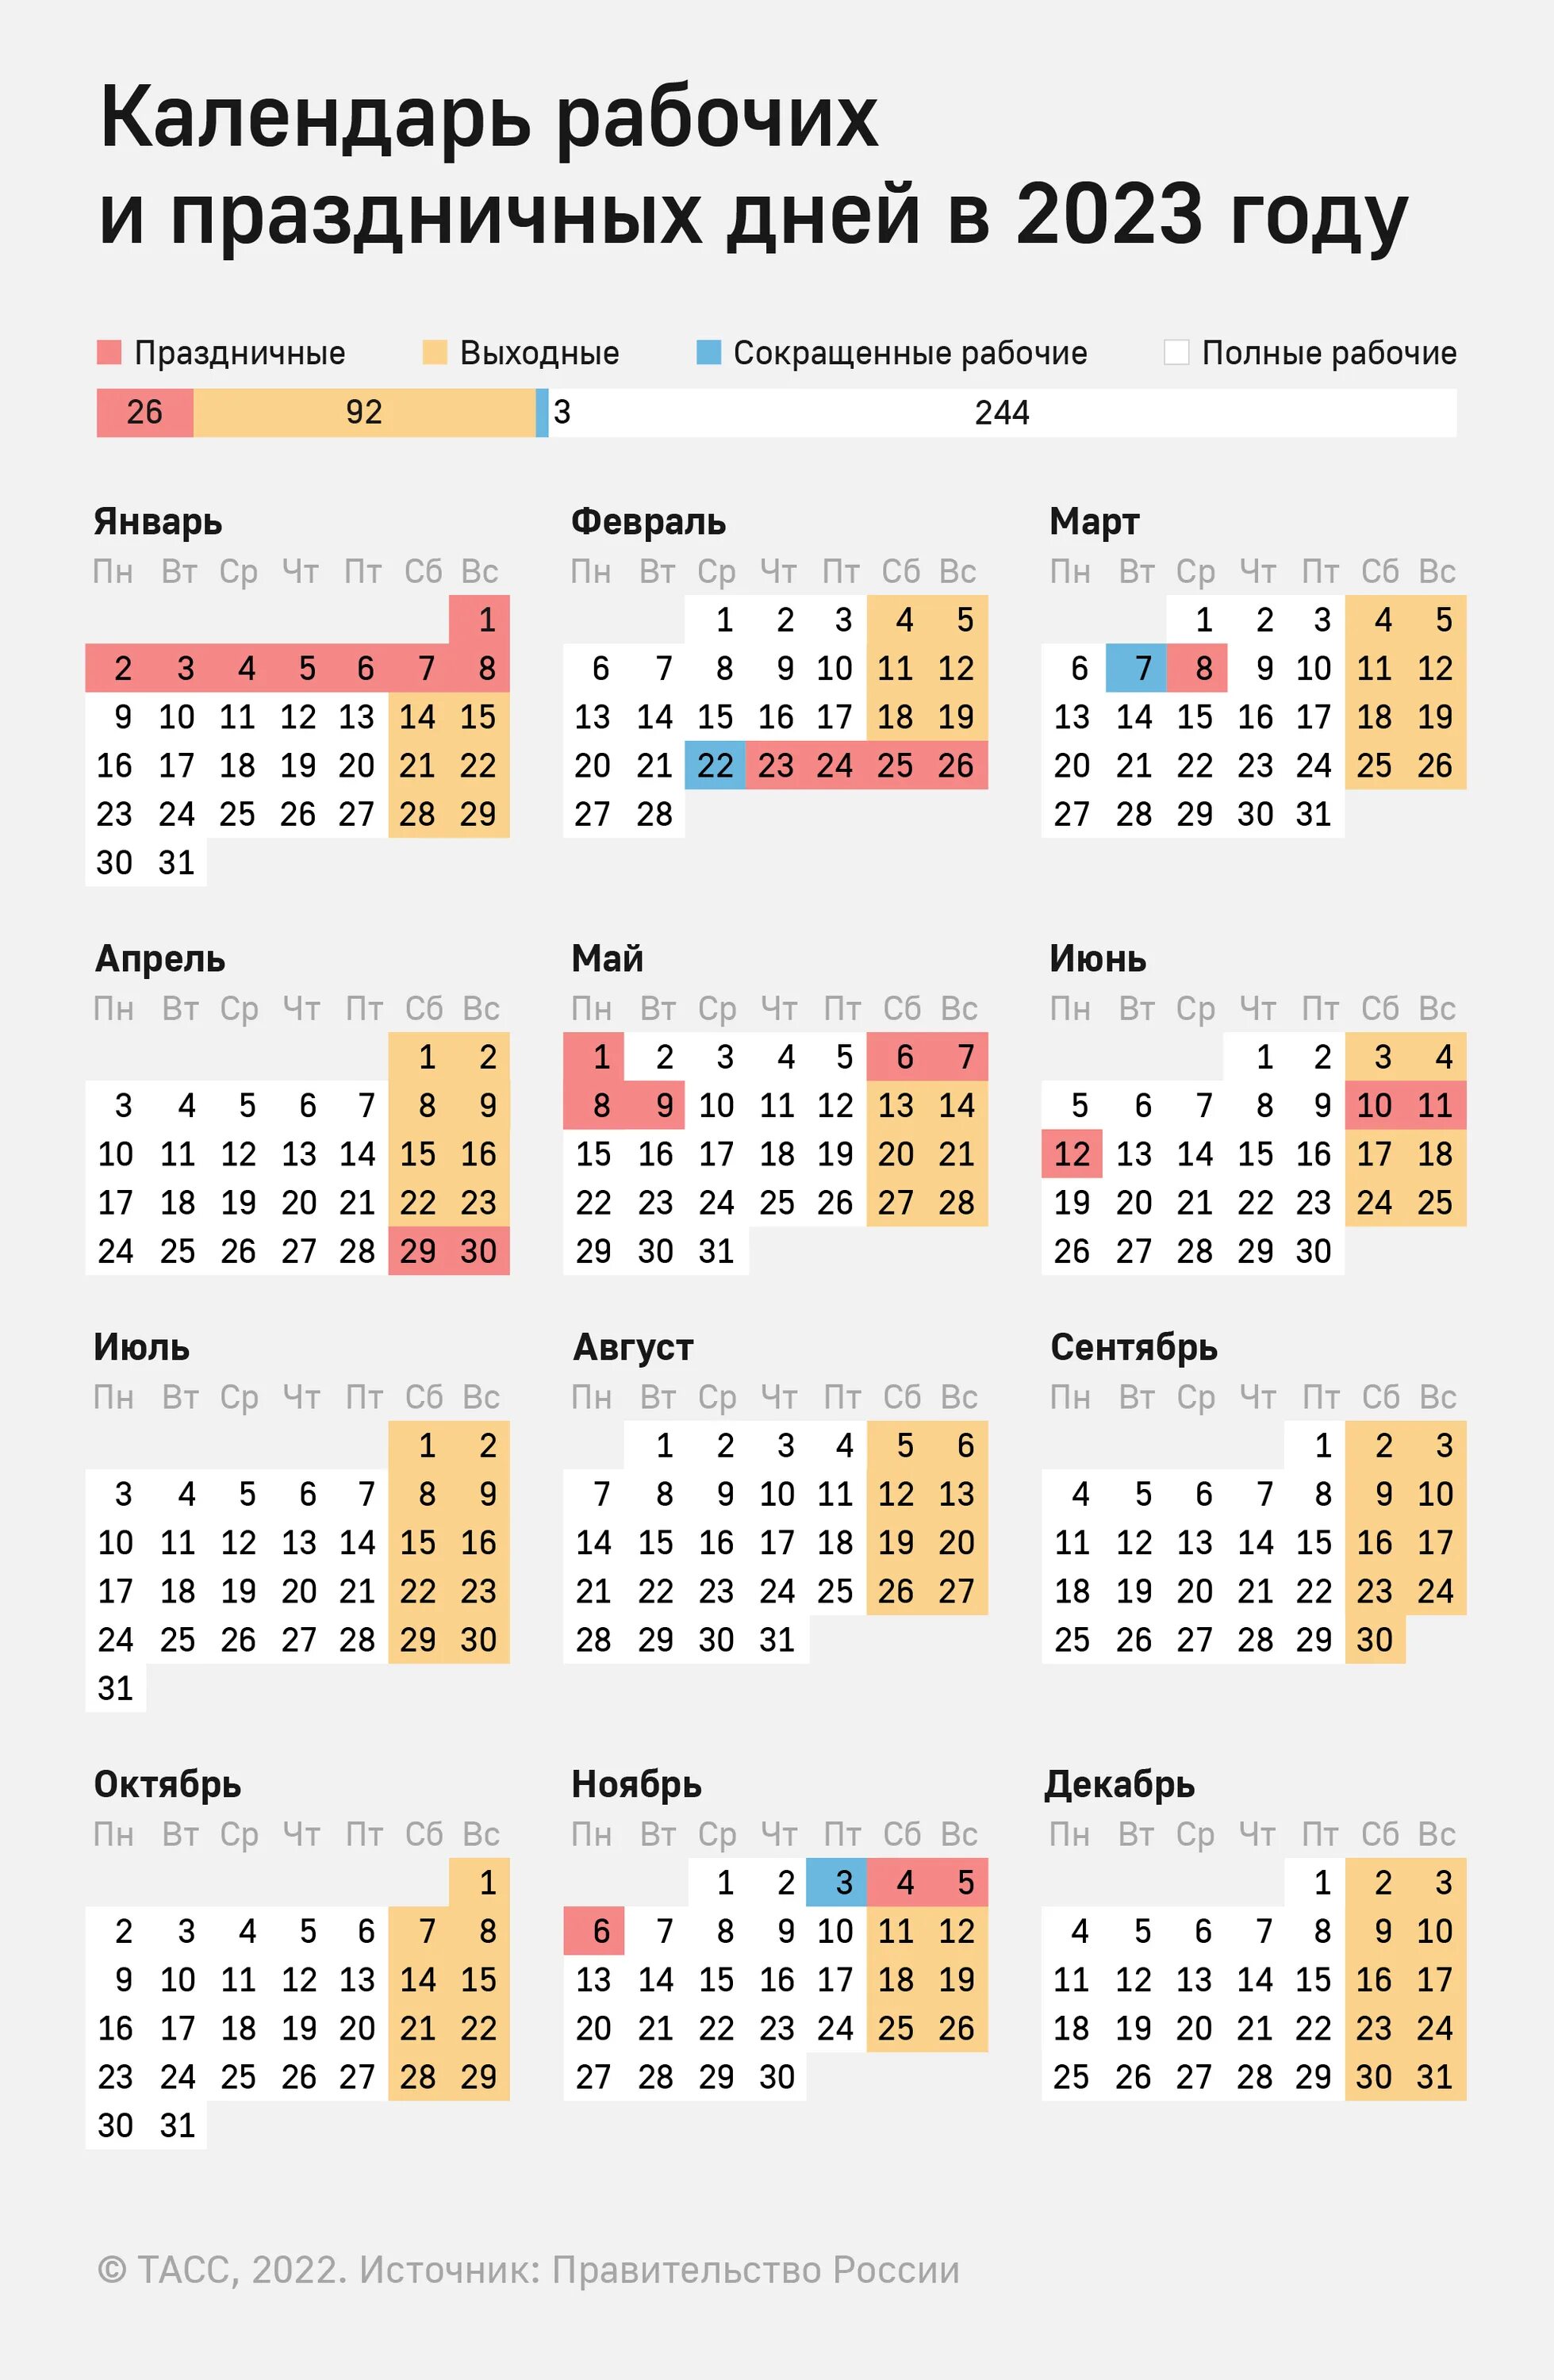 Праздники нерабочие дни 2022 года в России. Выходные и праздничные дни в 2022 году производственный. Праздничные дни 2022 календарь утвержденный. Производственный календарь РФ на 2022 год с праздниками и выходными.